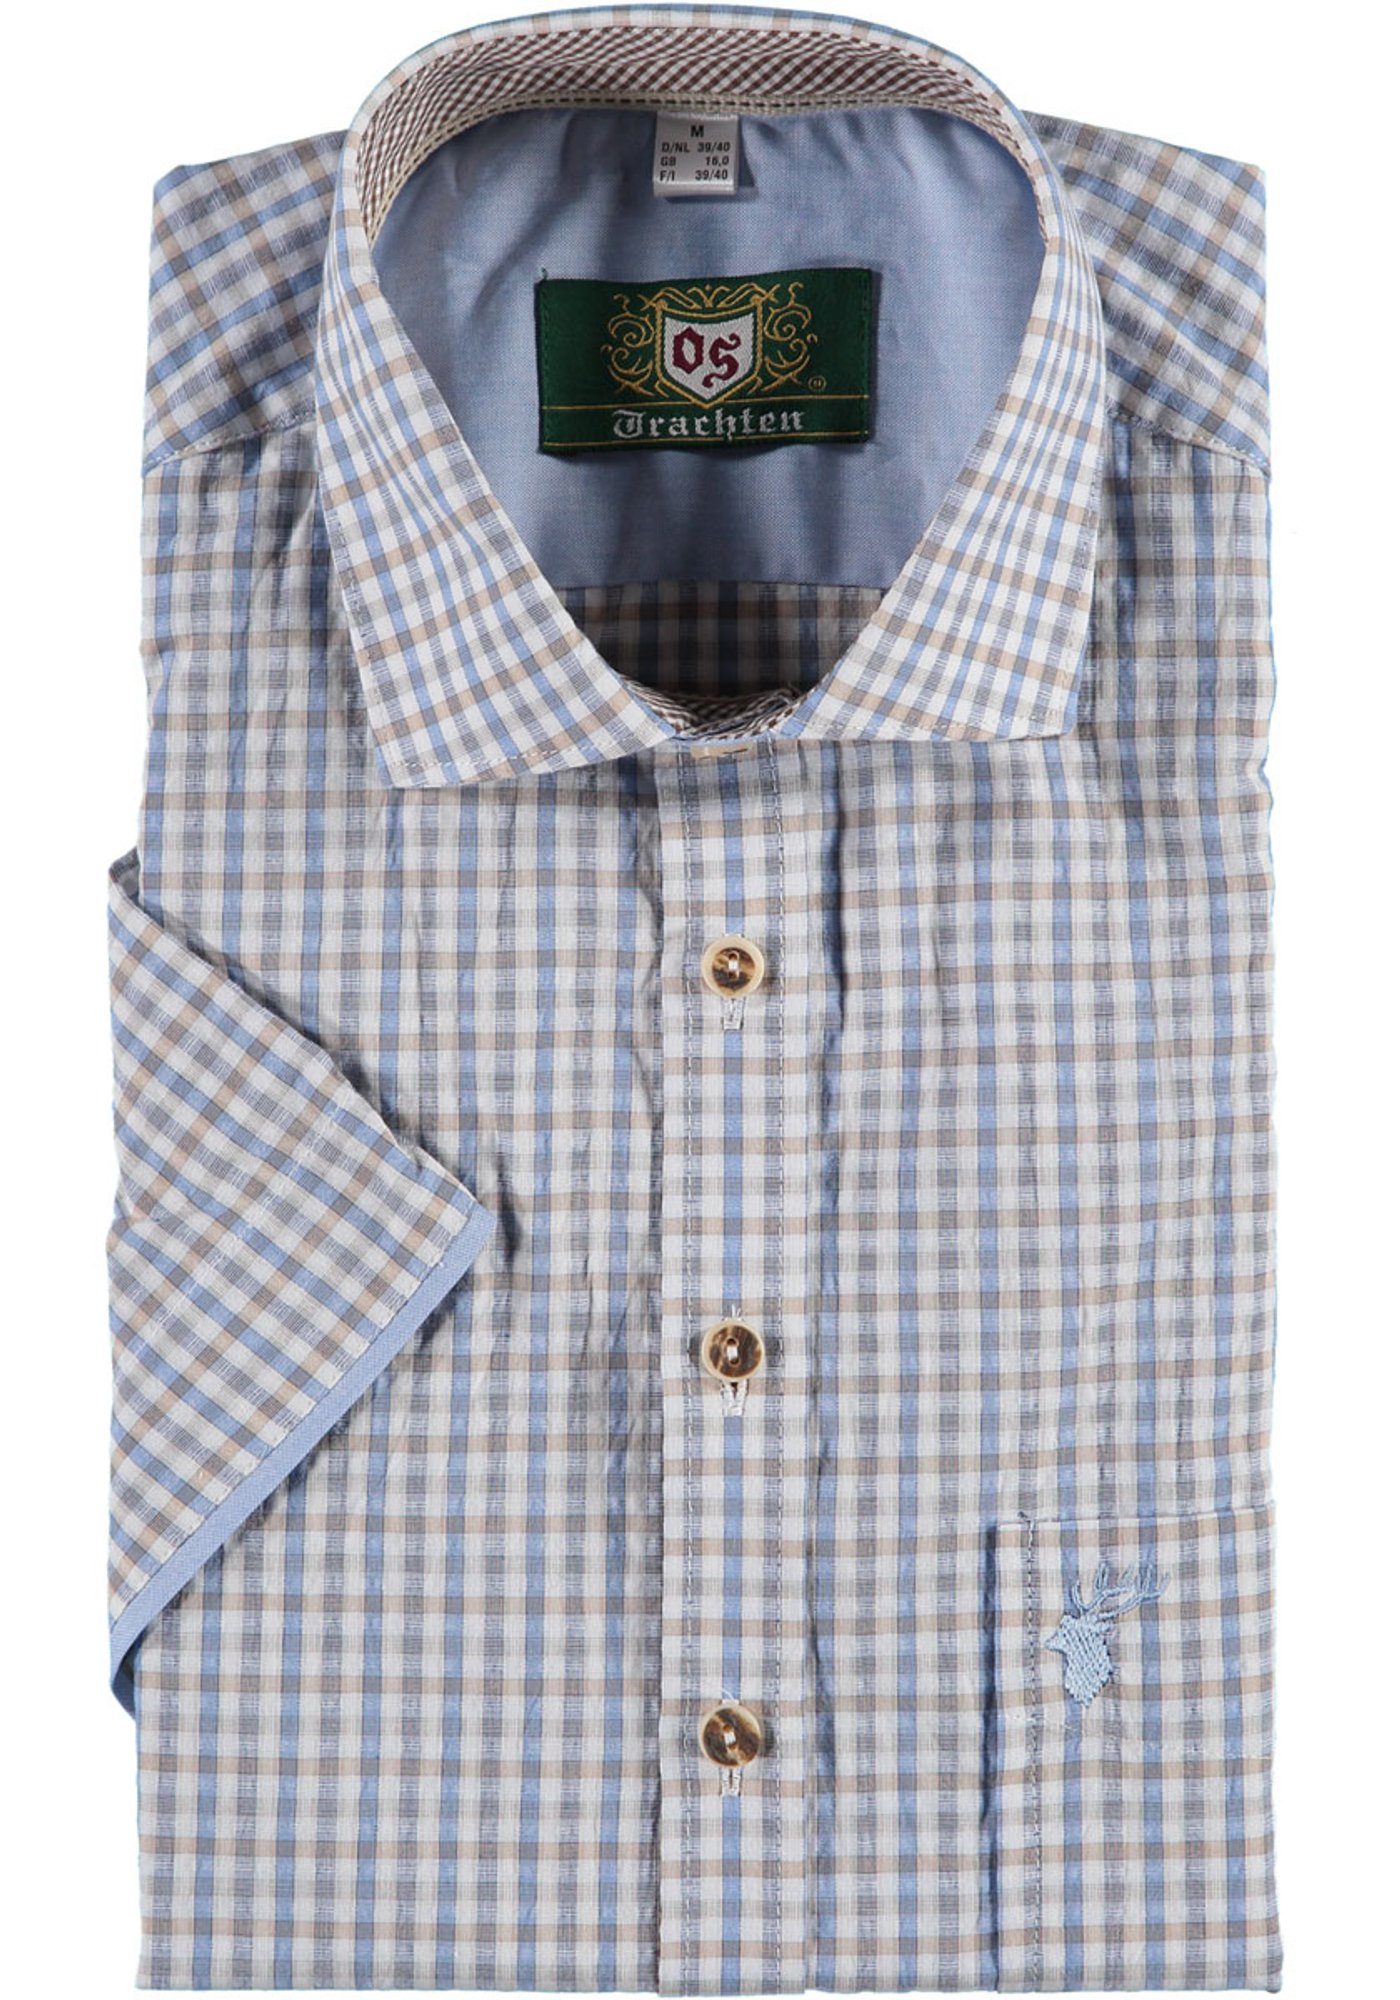 OS-Trachten Trachtenhemd Gafoo Herren Kurzarmhemd mit Hirsch-Stickerei auf der Brusttasche